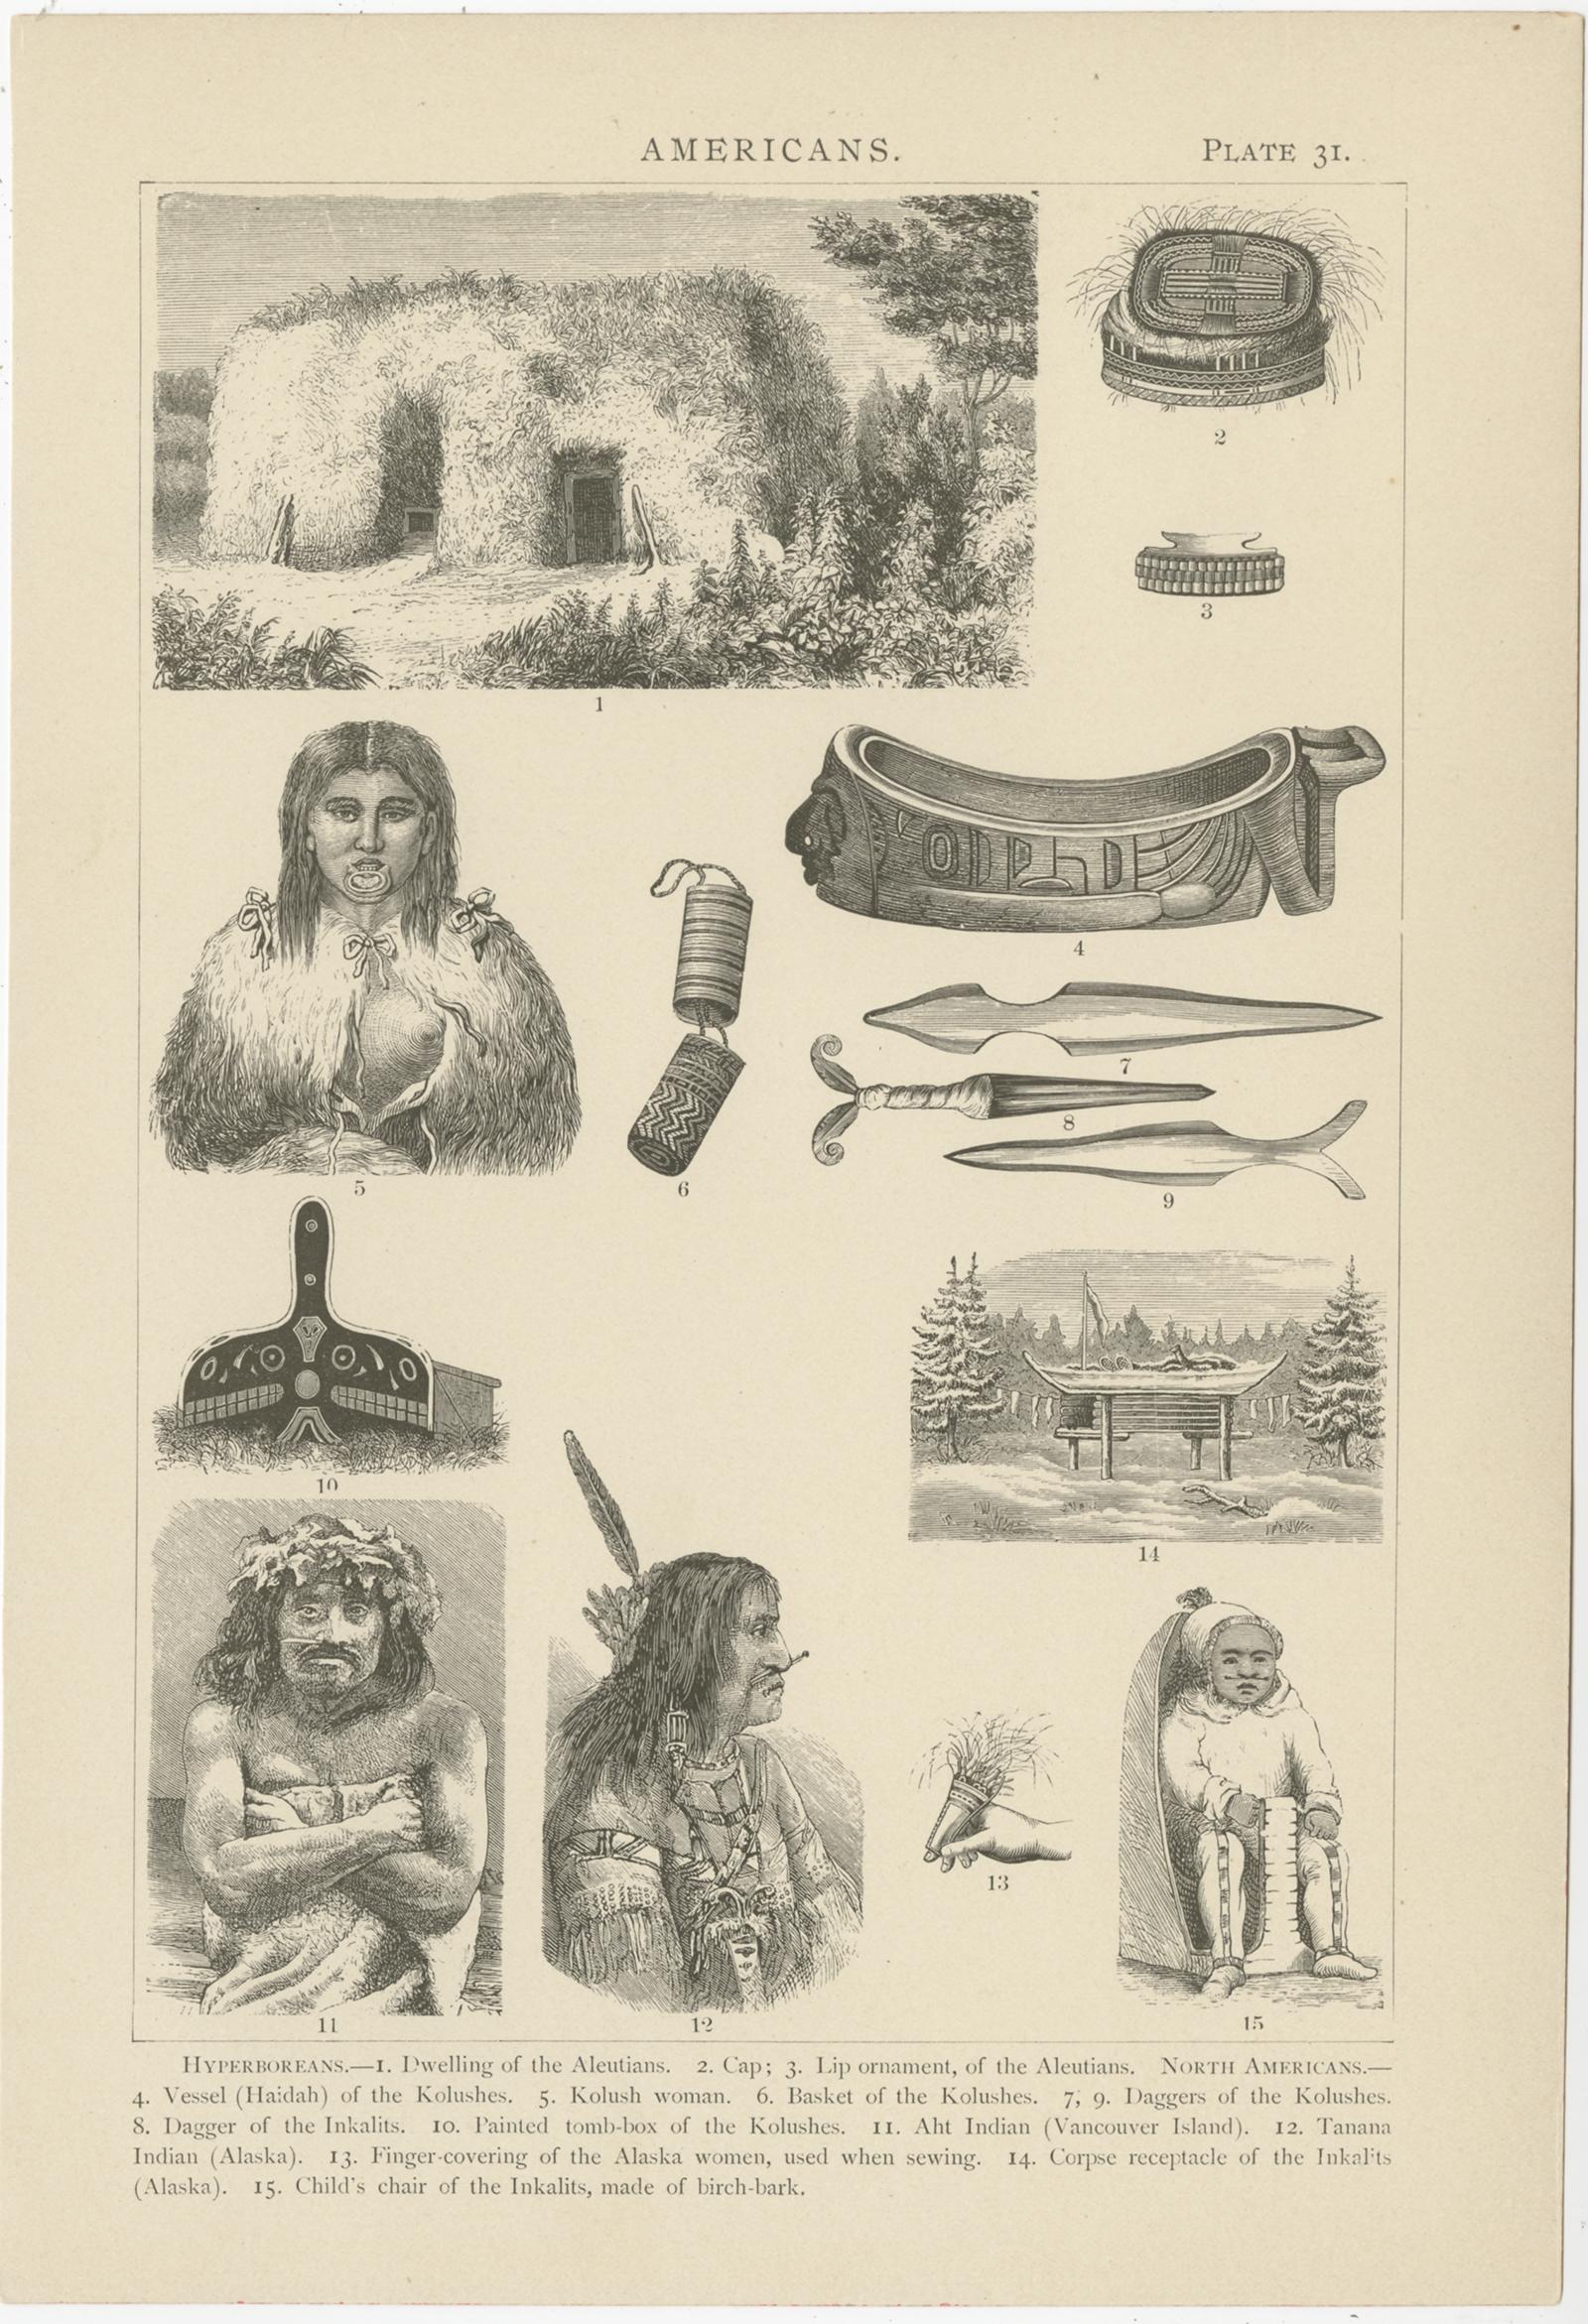 Ensemble de trois gravures anciennes représentant diverses scènes, personnages et objets du Canada, de l'Alaska et d'autres régions d'Amérique du Nord. Ces impressions proviennent de l'